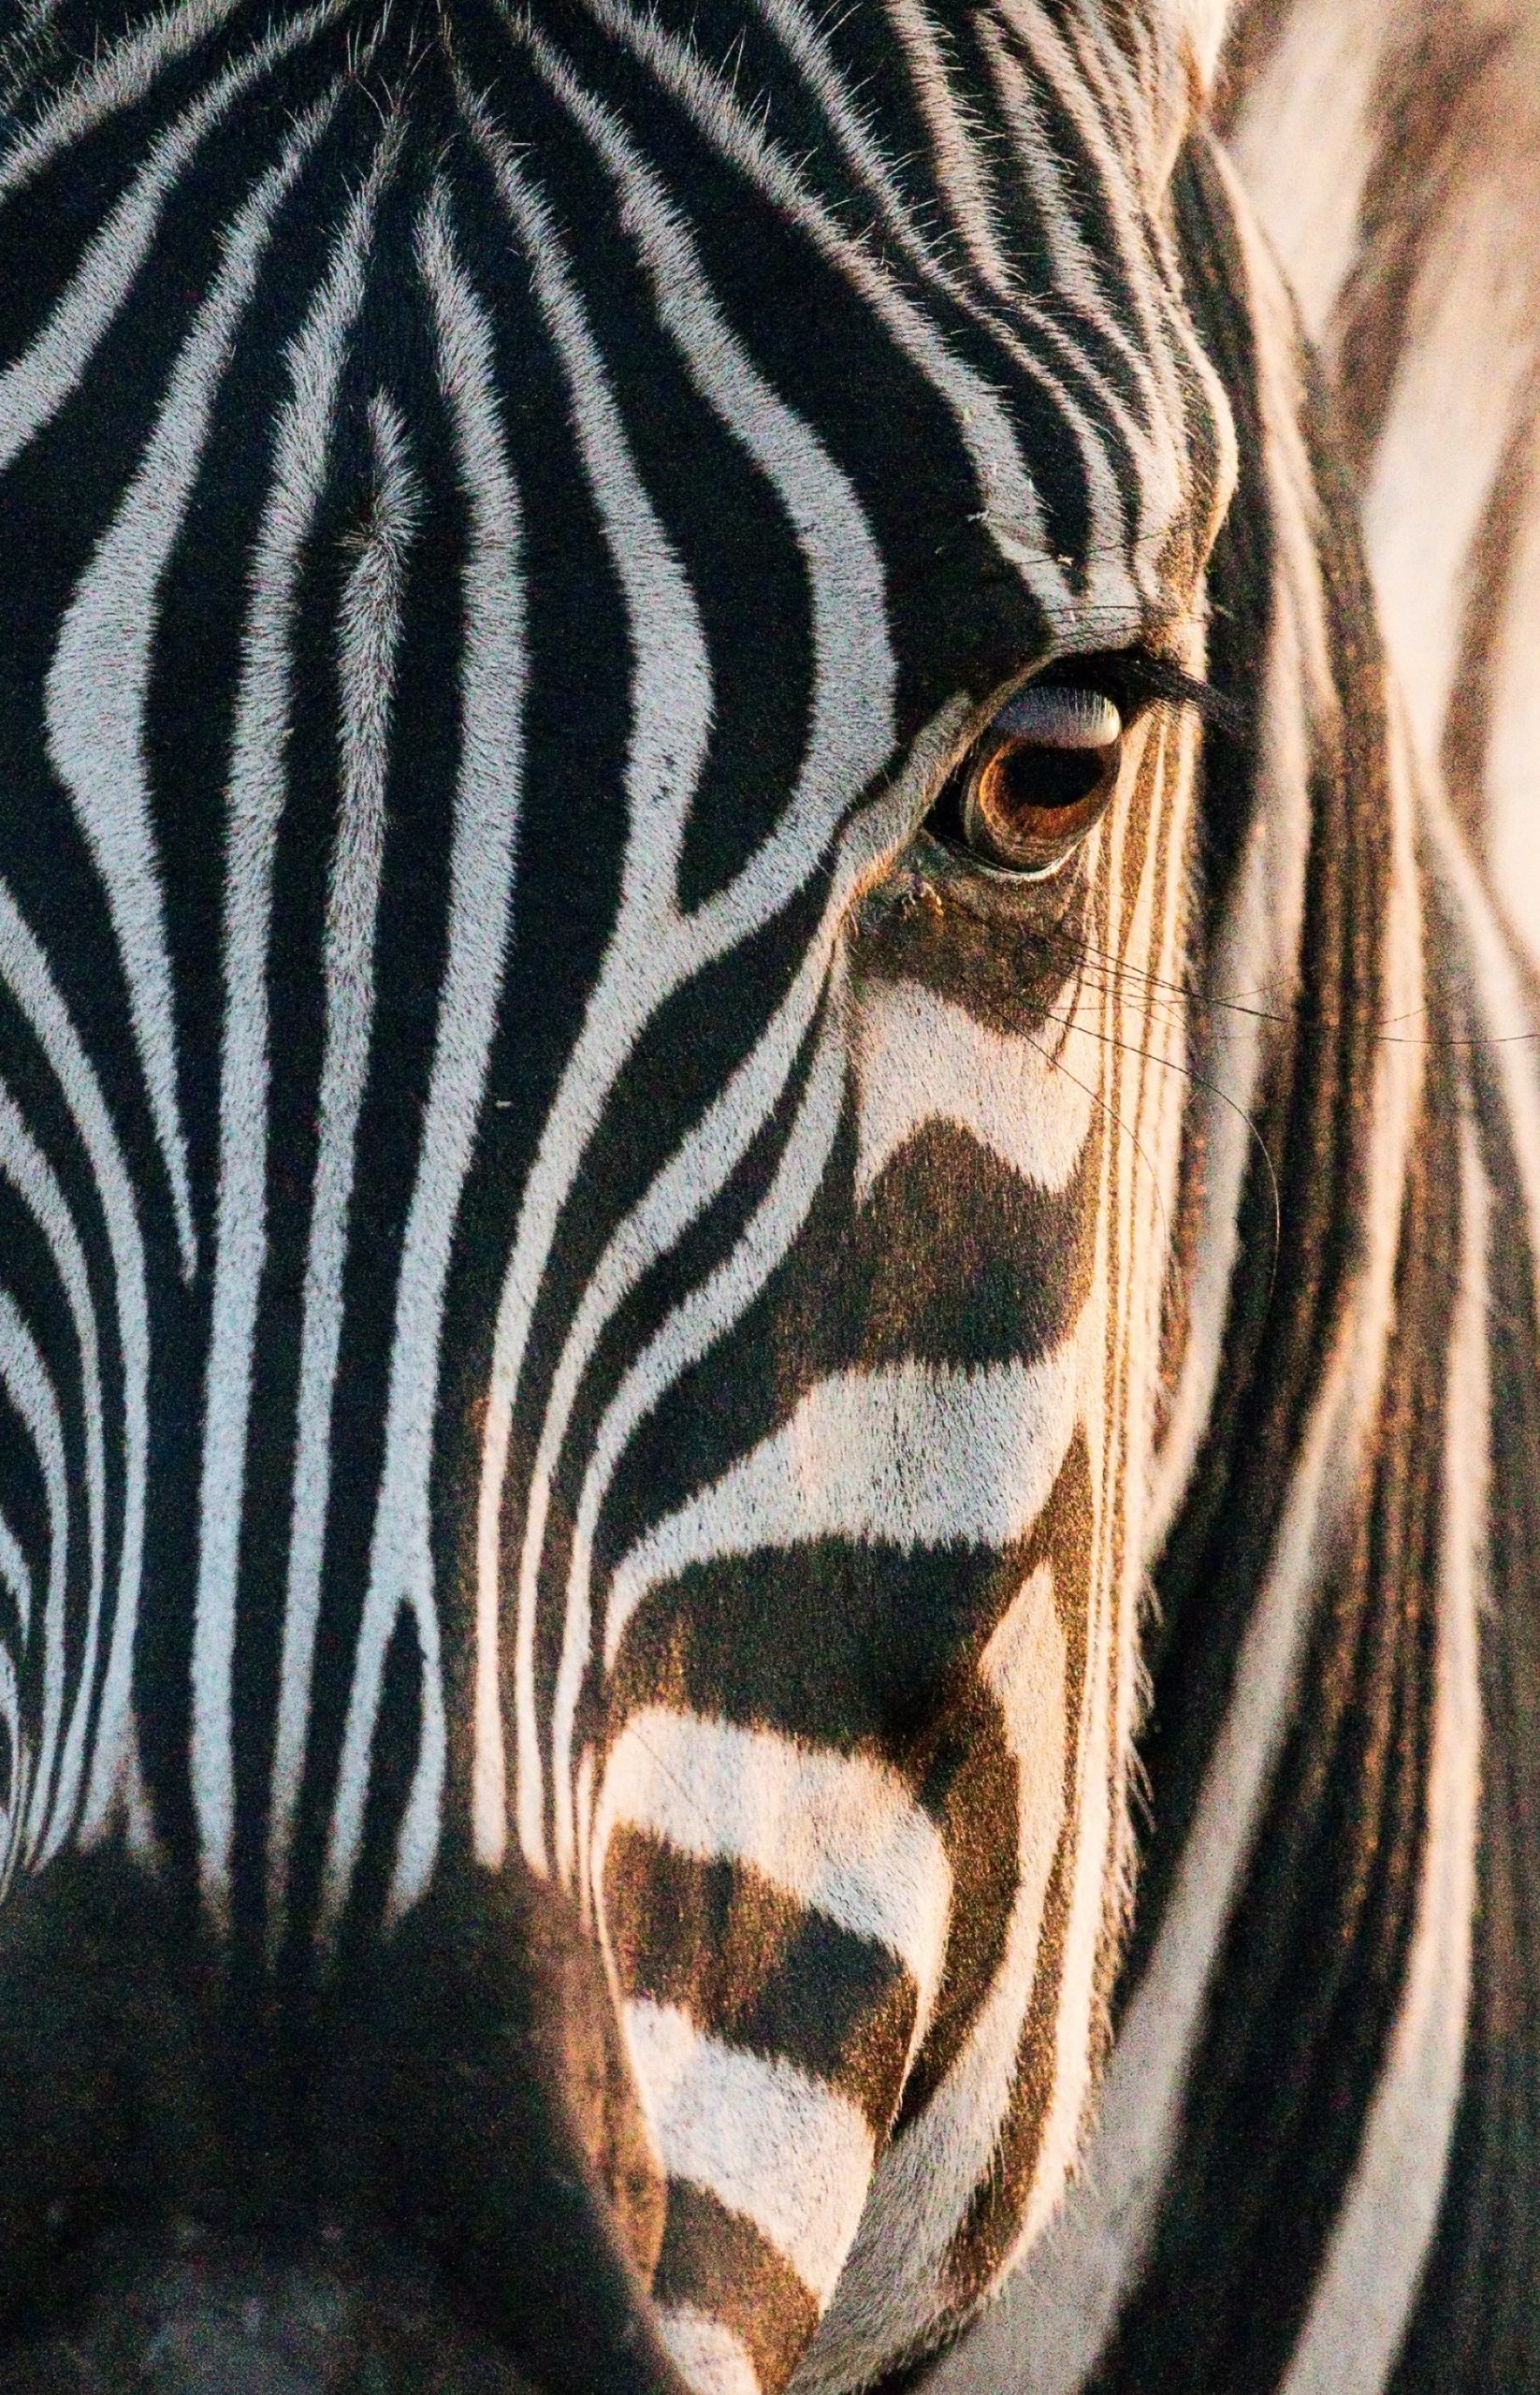 Portrait picture of a zebra